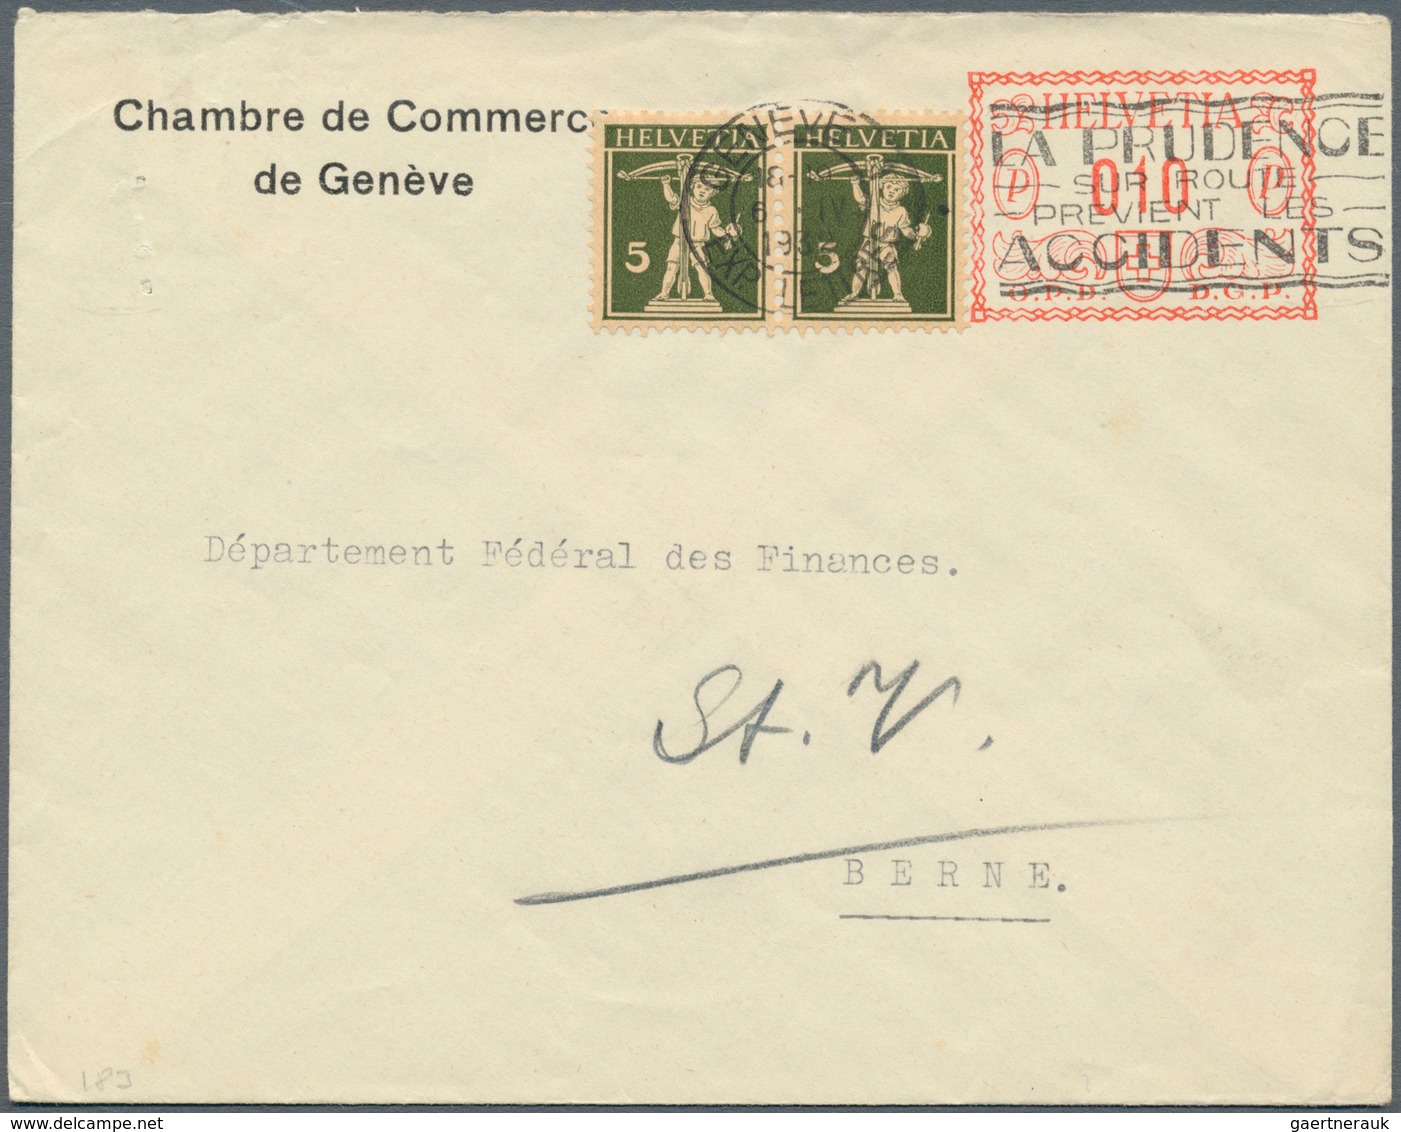 Schweiz: 1907-2000 ca.: Sehr umfangreicher und vielfältiger Bestand von rund 5000 Briefen, Postkarte